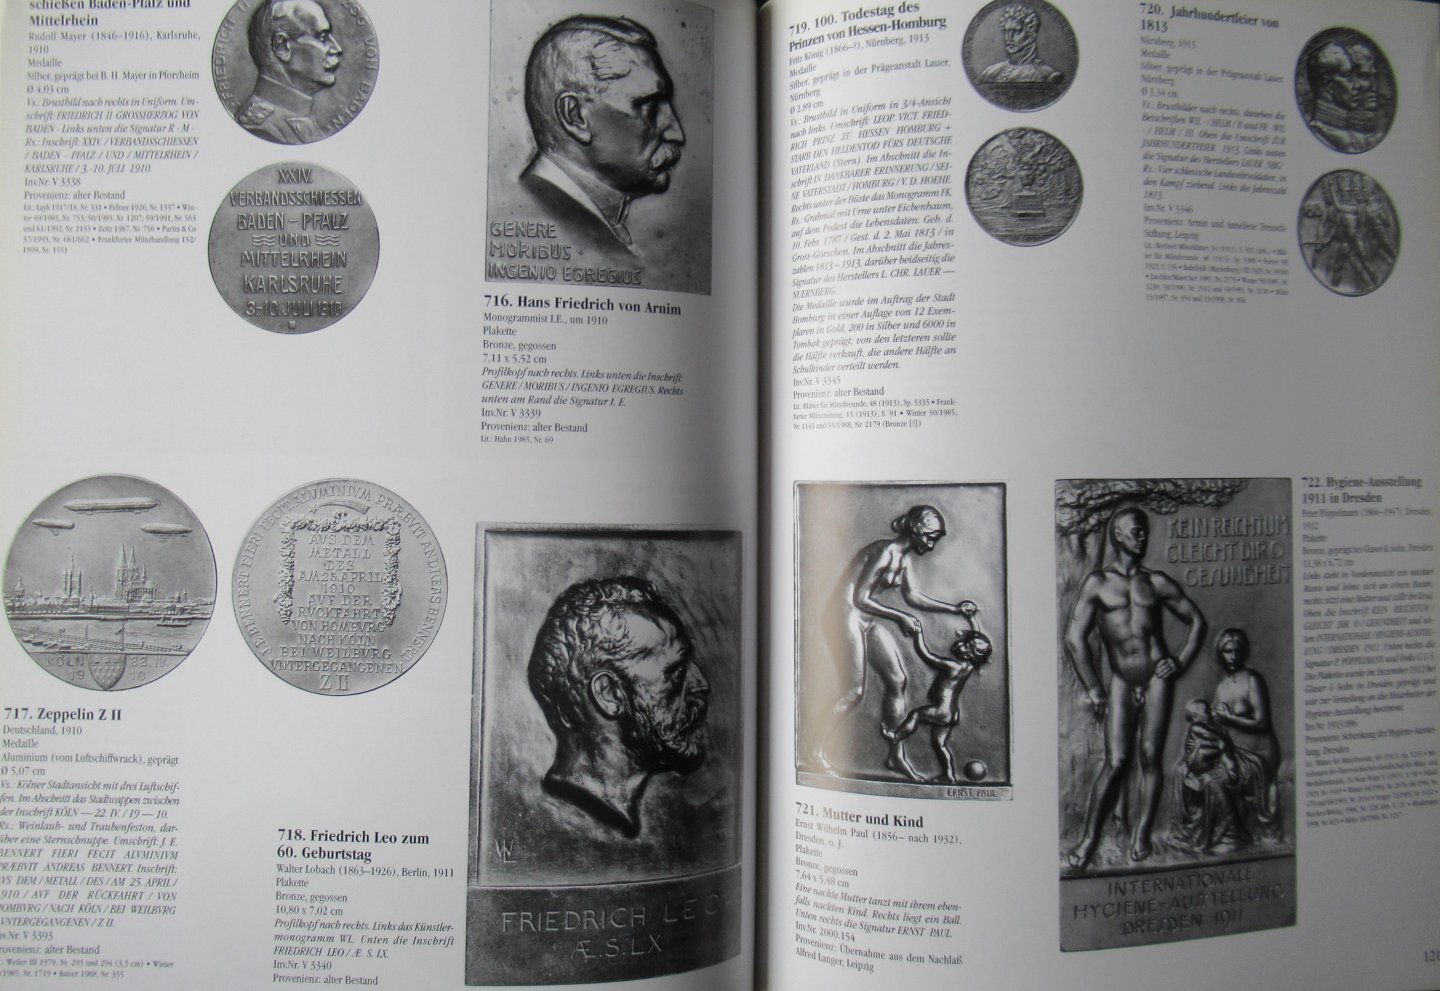 Bekker, Gerd - Europaische Plaketten und Medailen des 19, und 20 Jahrhunderts